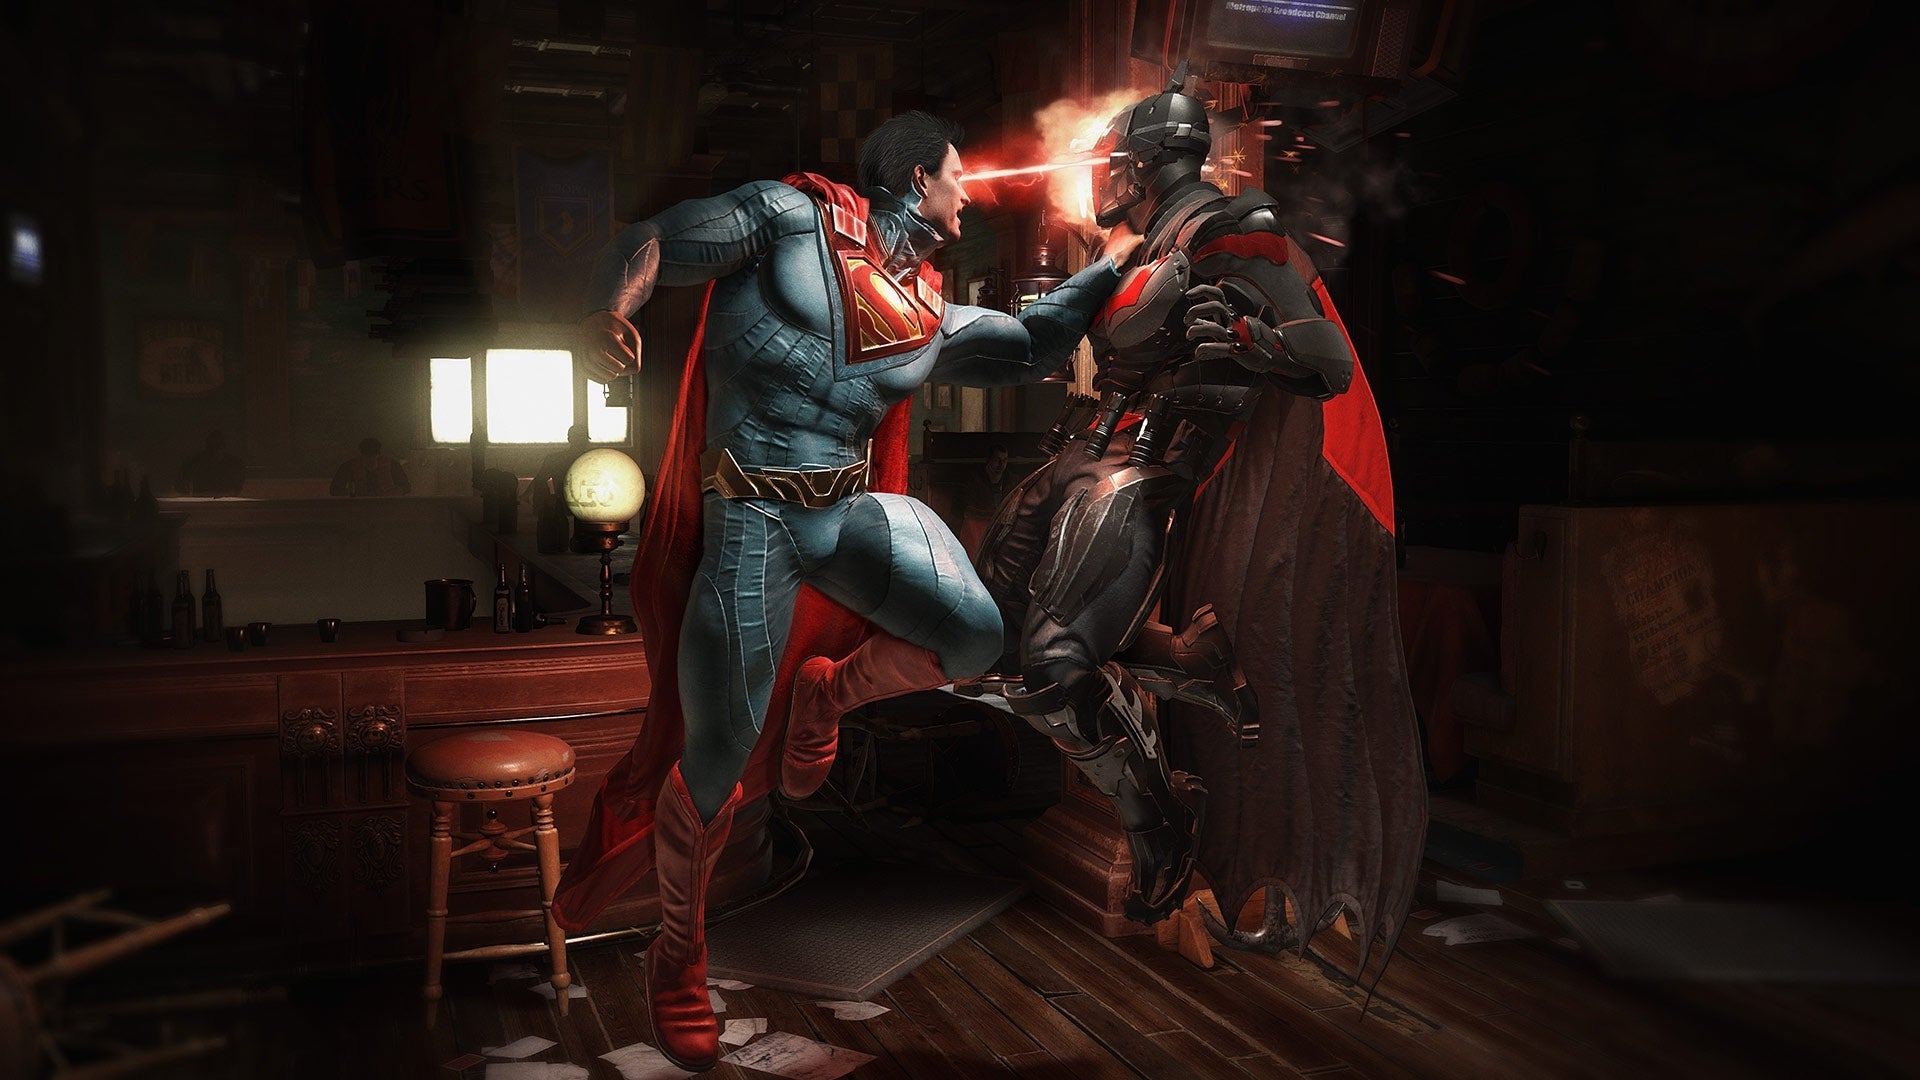 Immagine di Injustice 2: annunciata la versione di prova gratuita per i giocatori PlayStation 4 e Xbox One